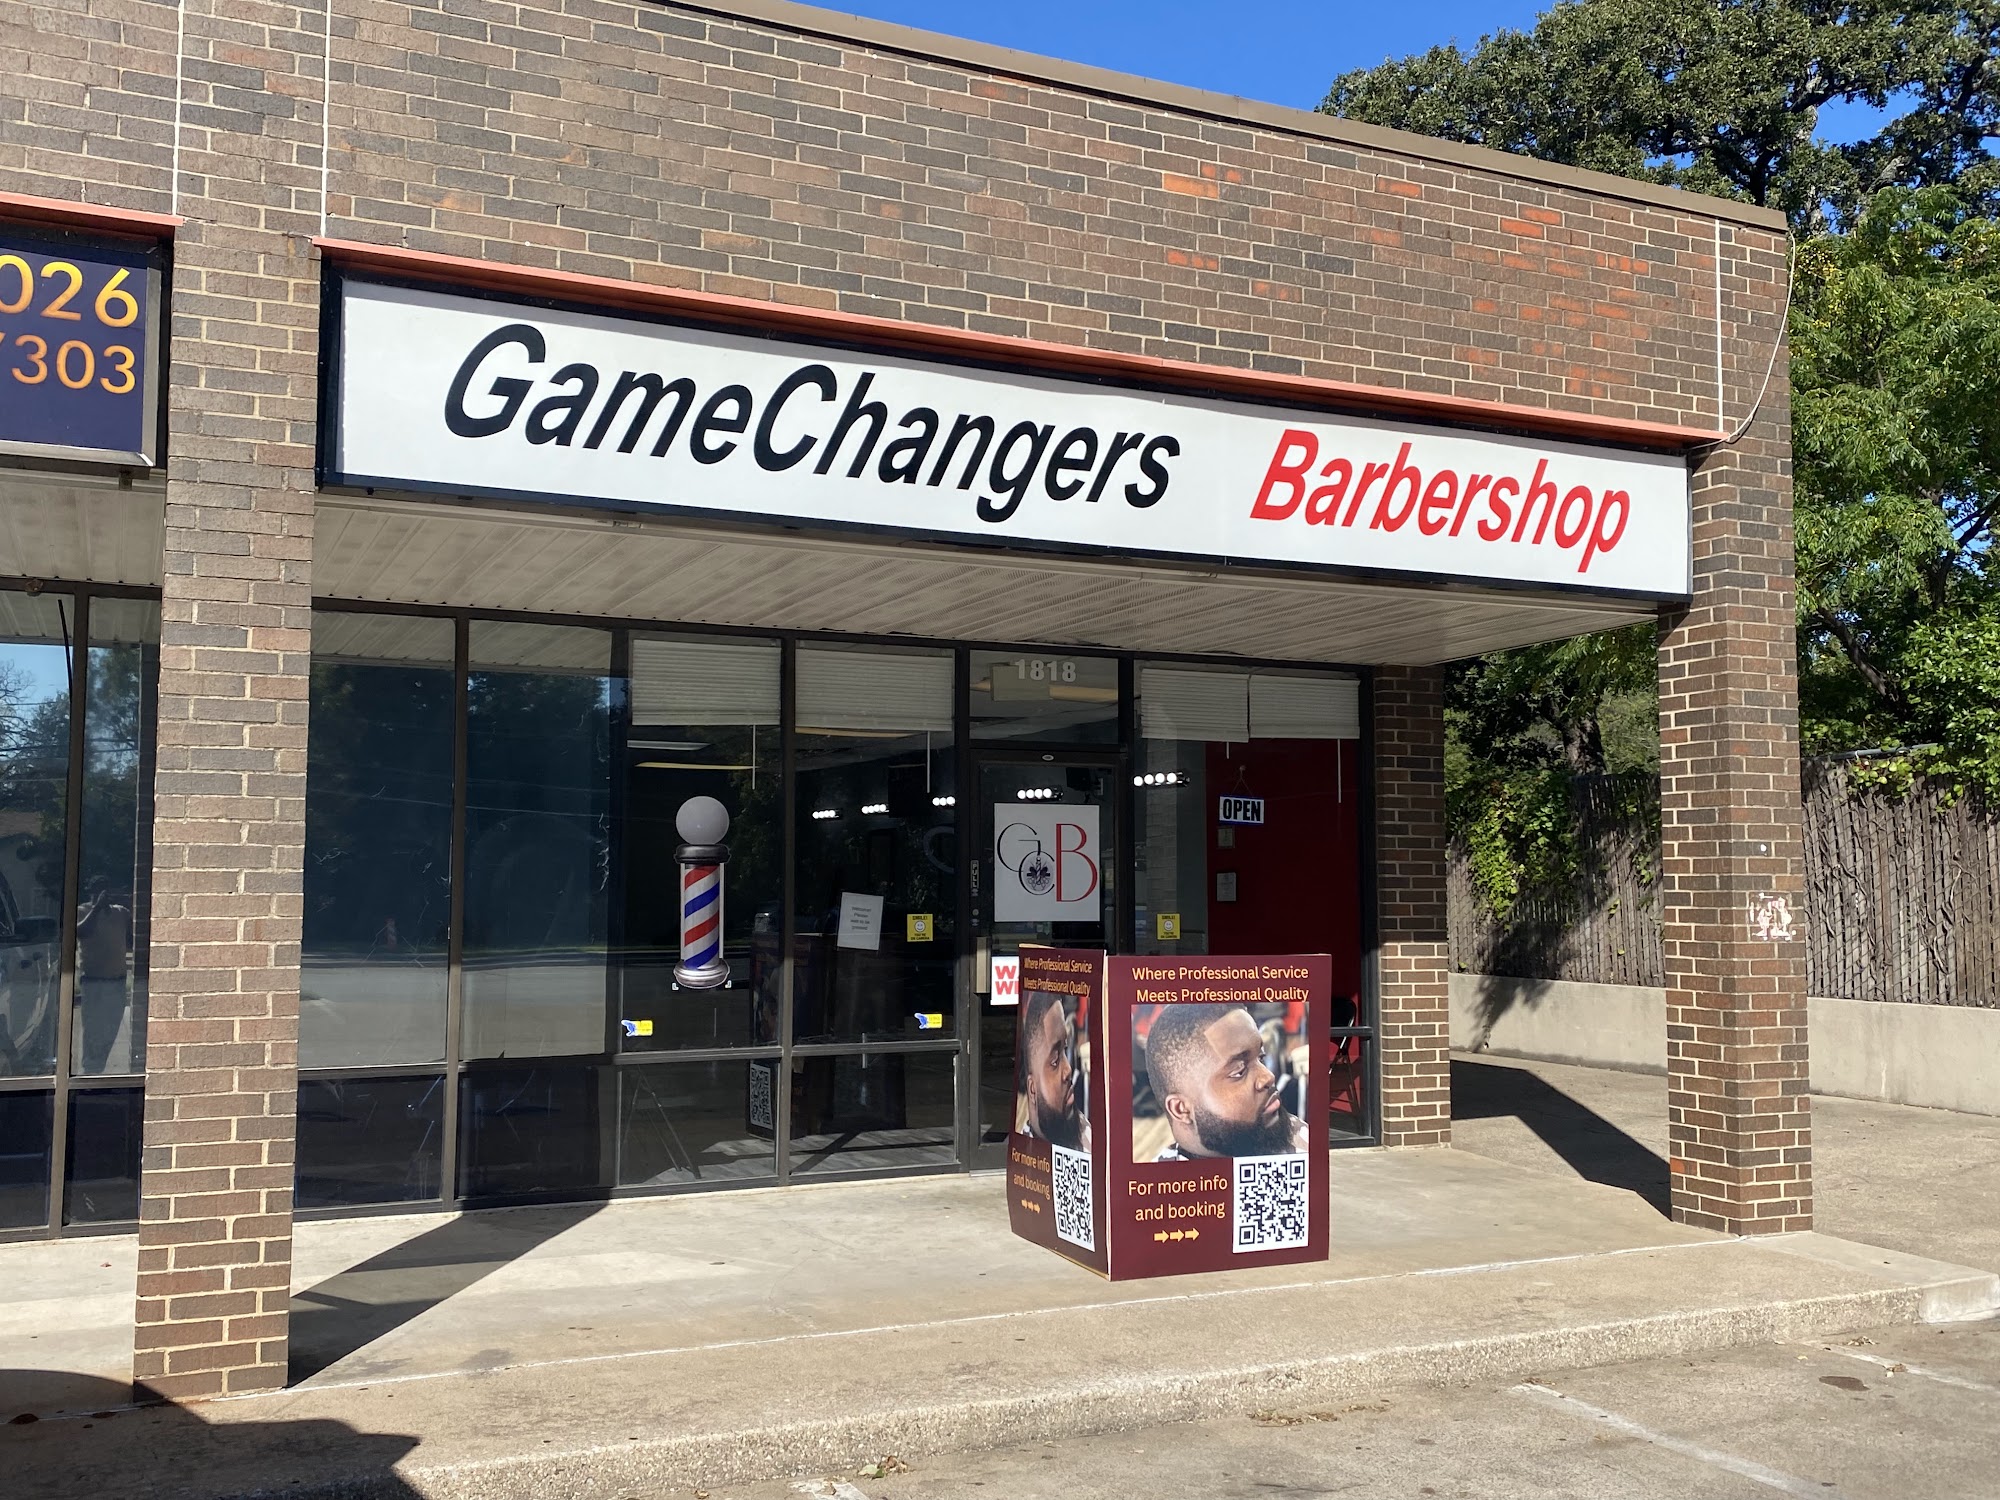 GameChangers Barbershop